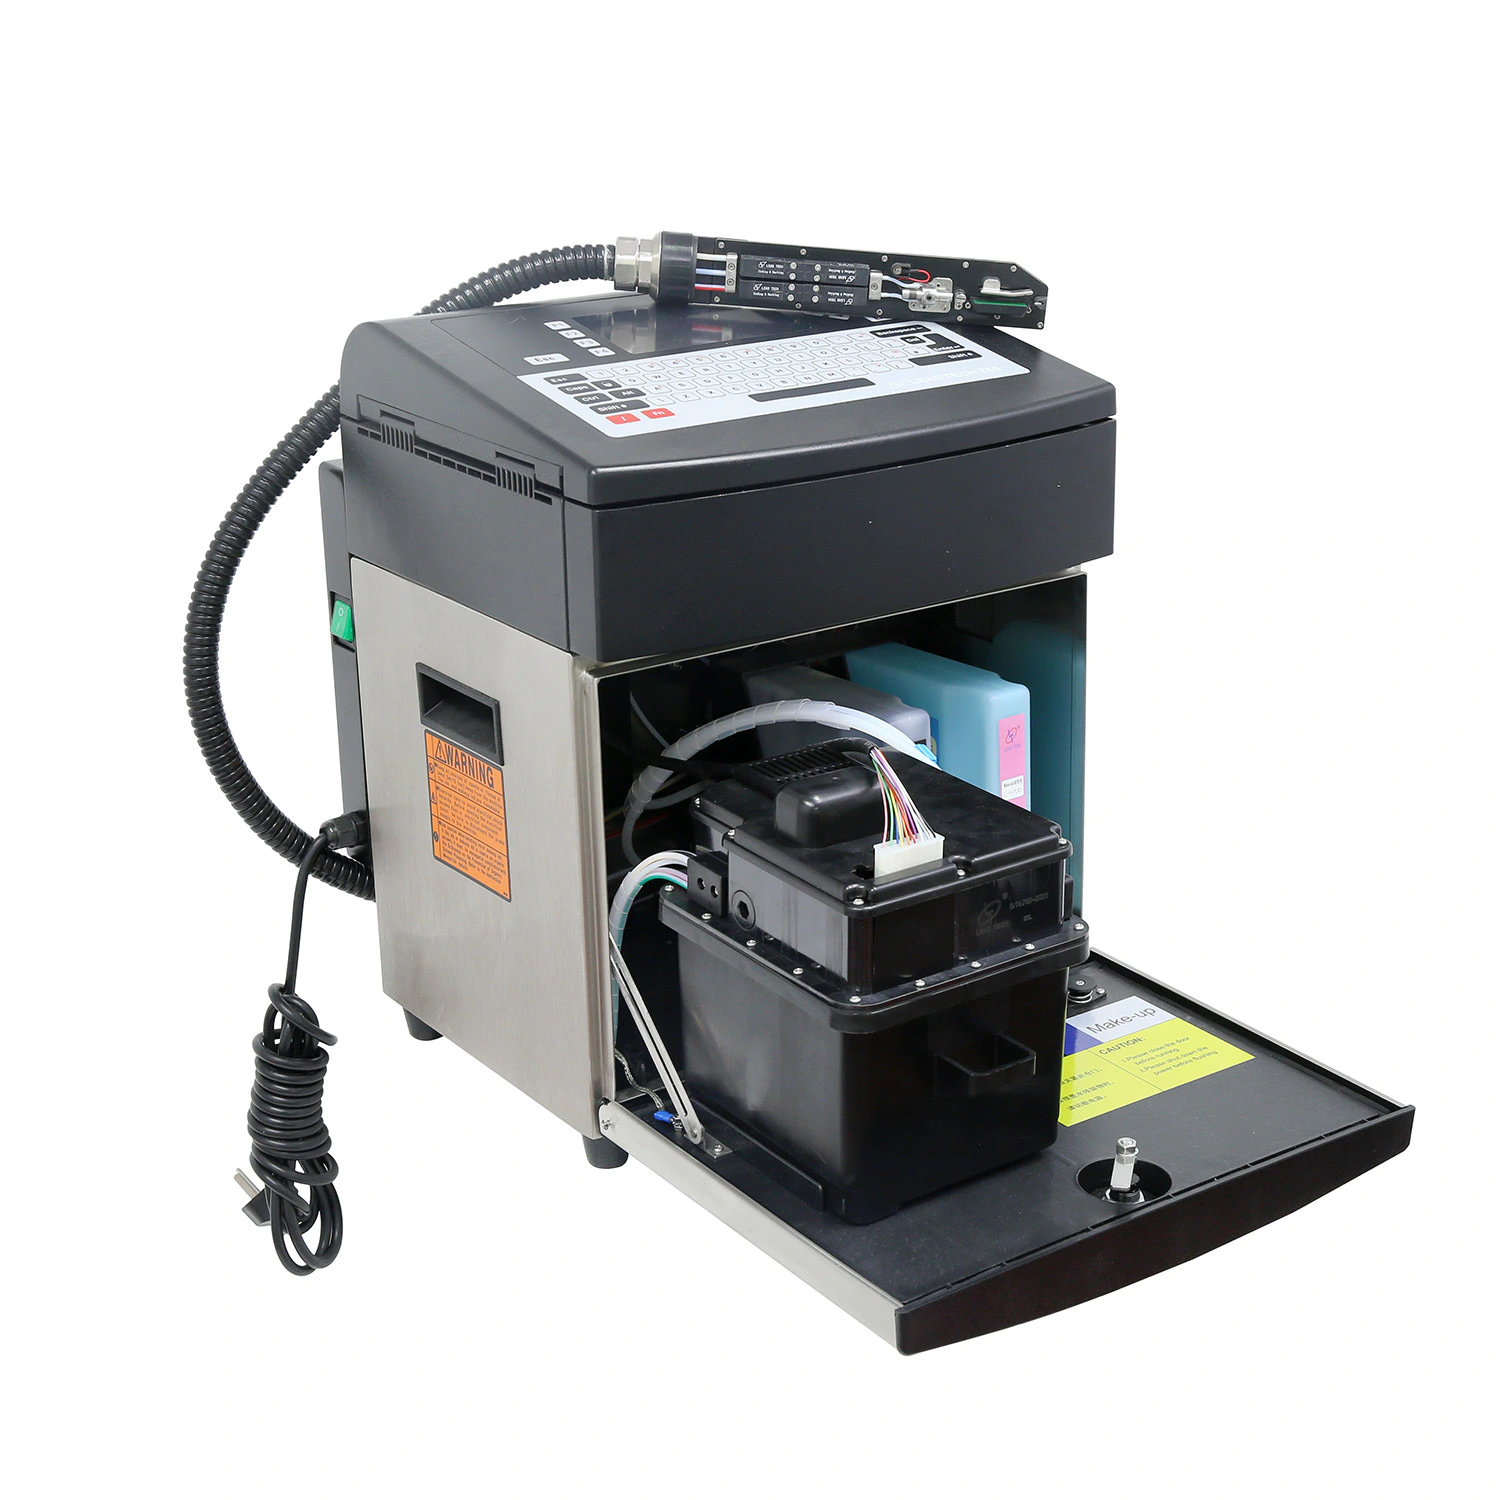 Lead Tech Lt760 Inkjet Date Marking Machine Printer